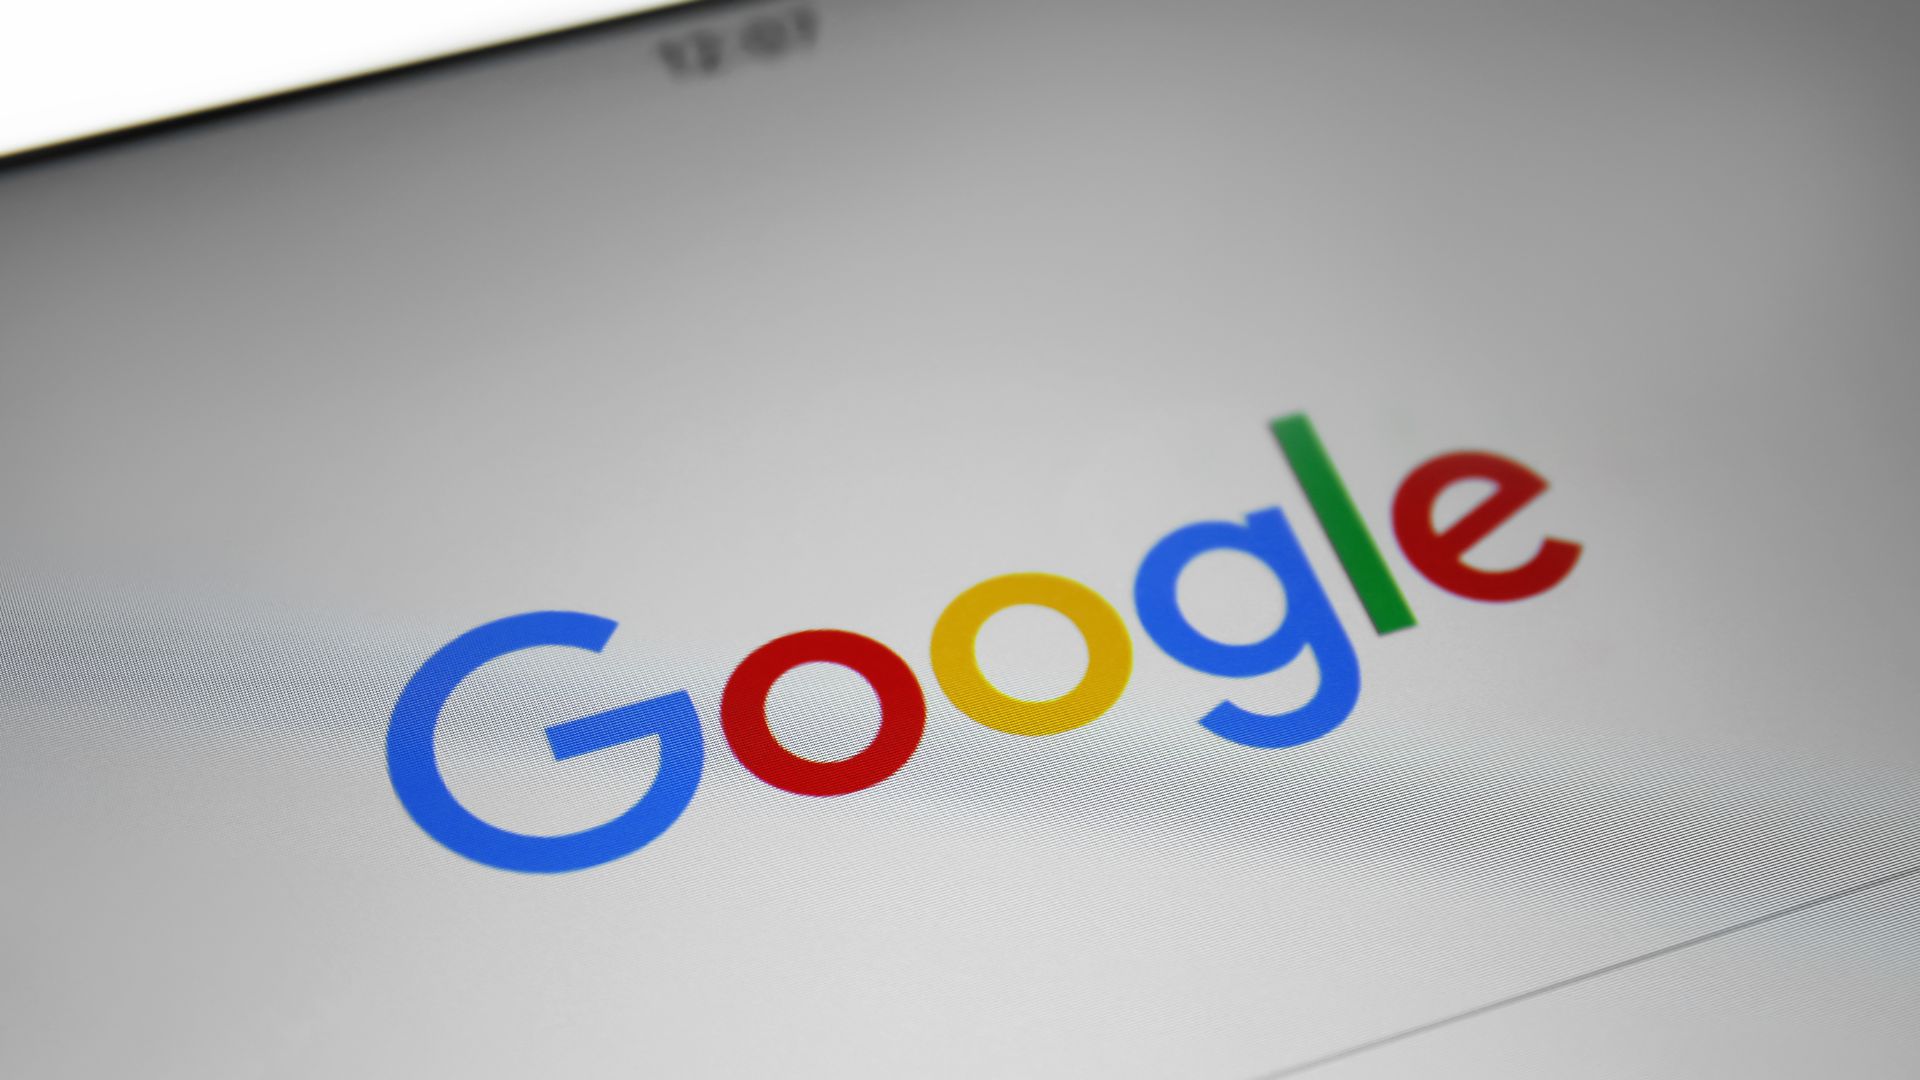 Google impulsa ecosistema de publicidad digital sano